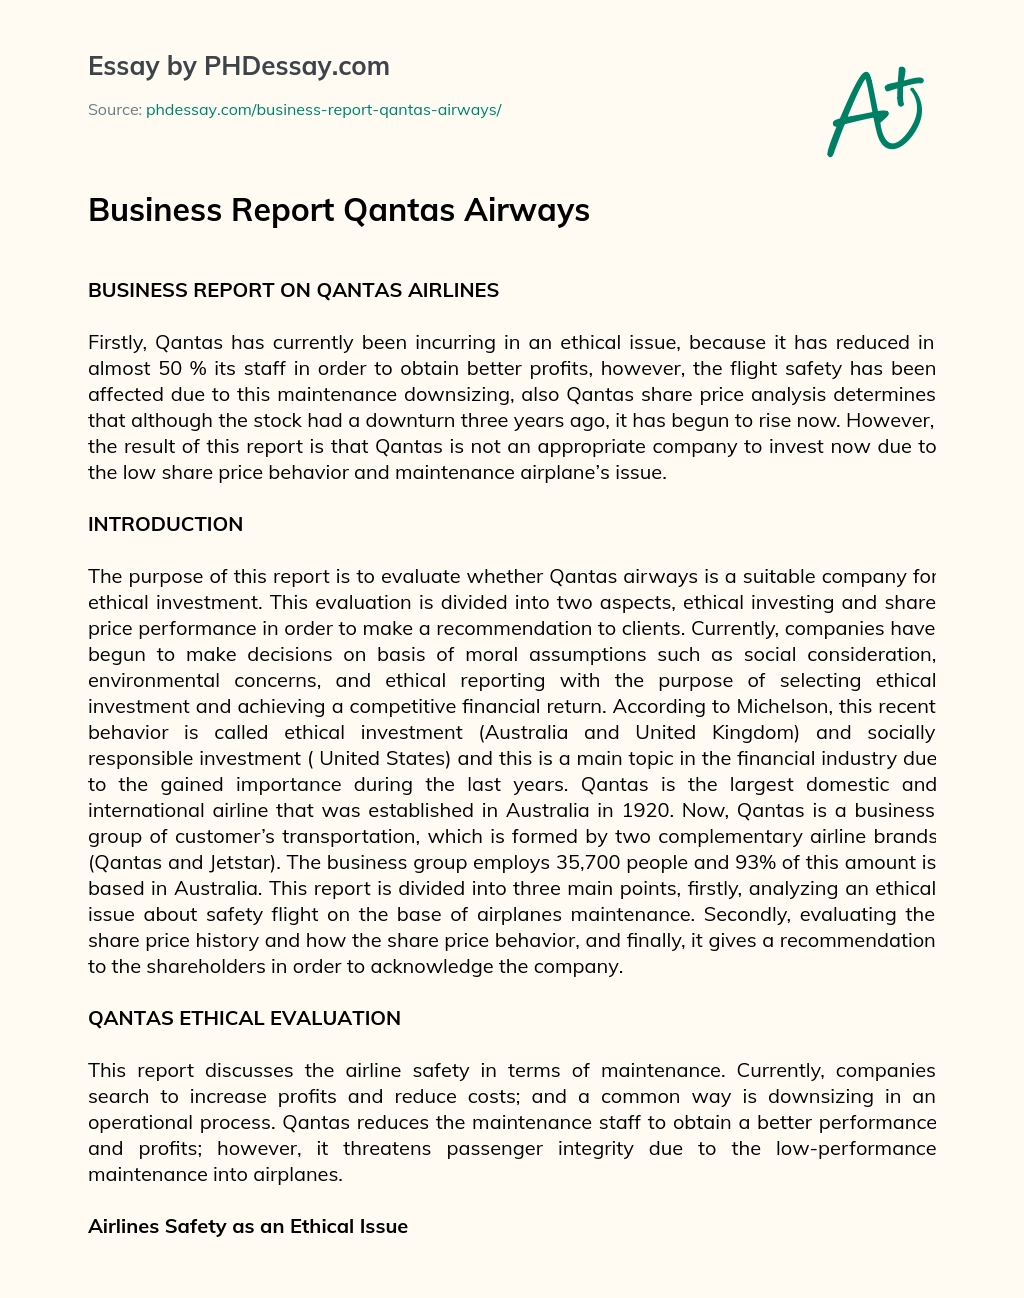 Business Report Qantas Airways essay